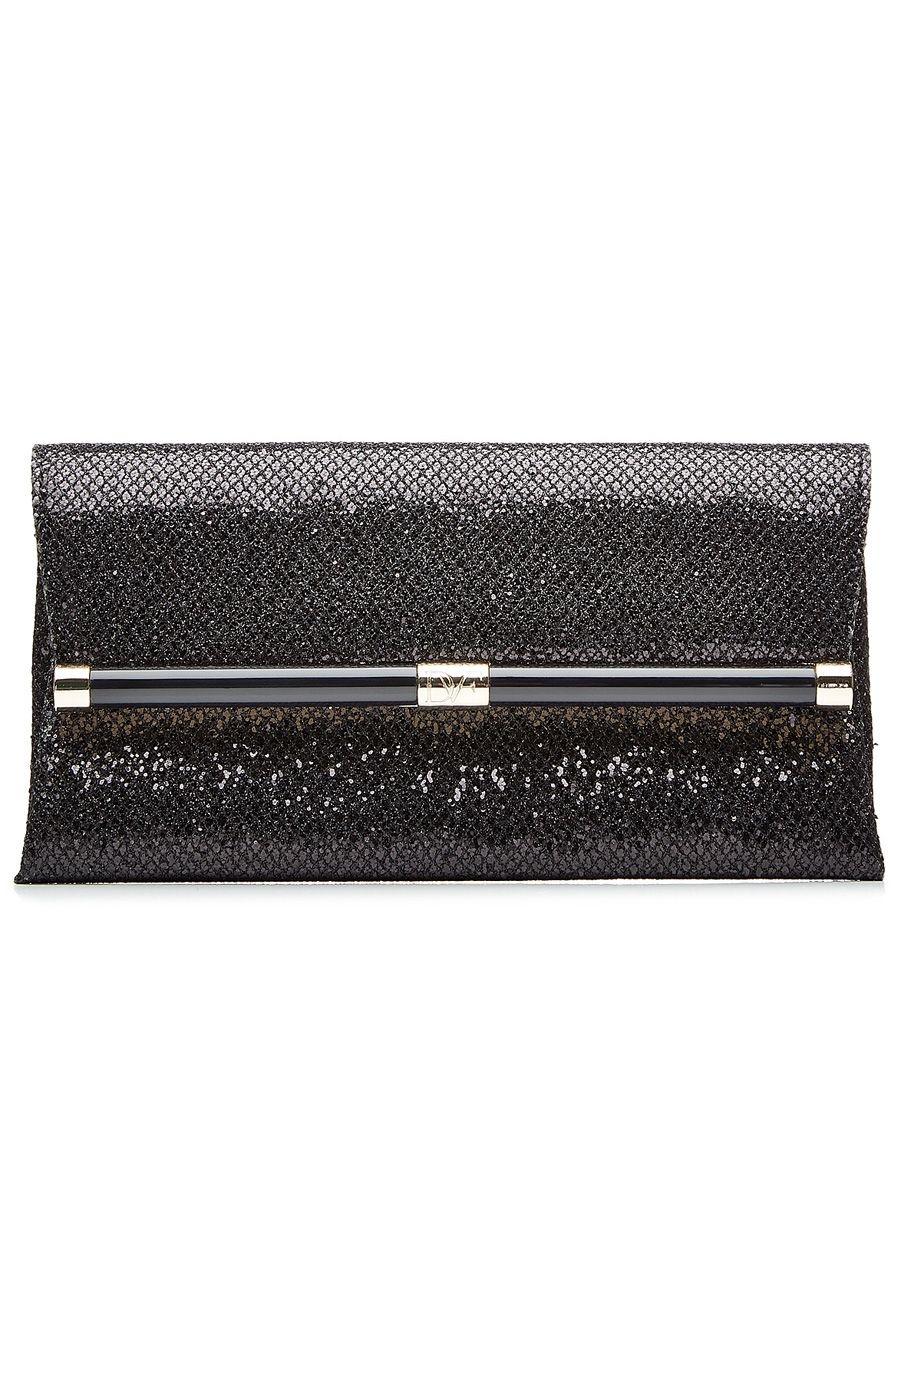 Diane von Furstenberg - 440 Envelope Glittered Leather Clutch - Black - Front